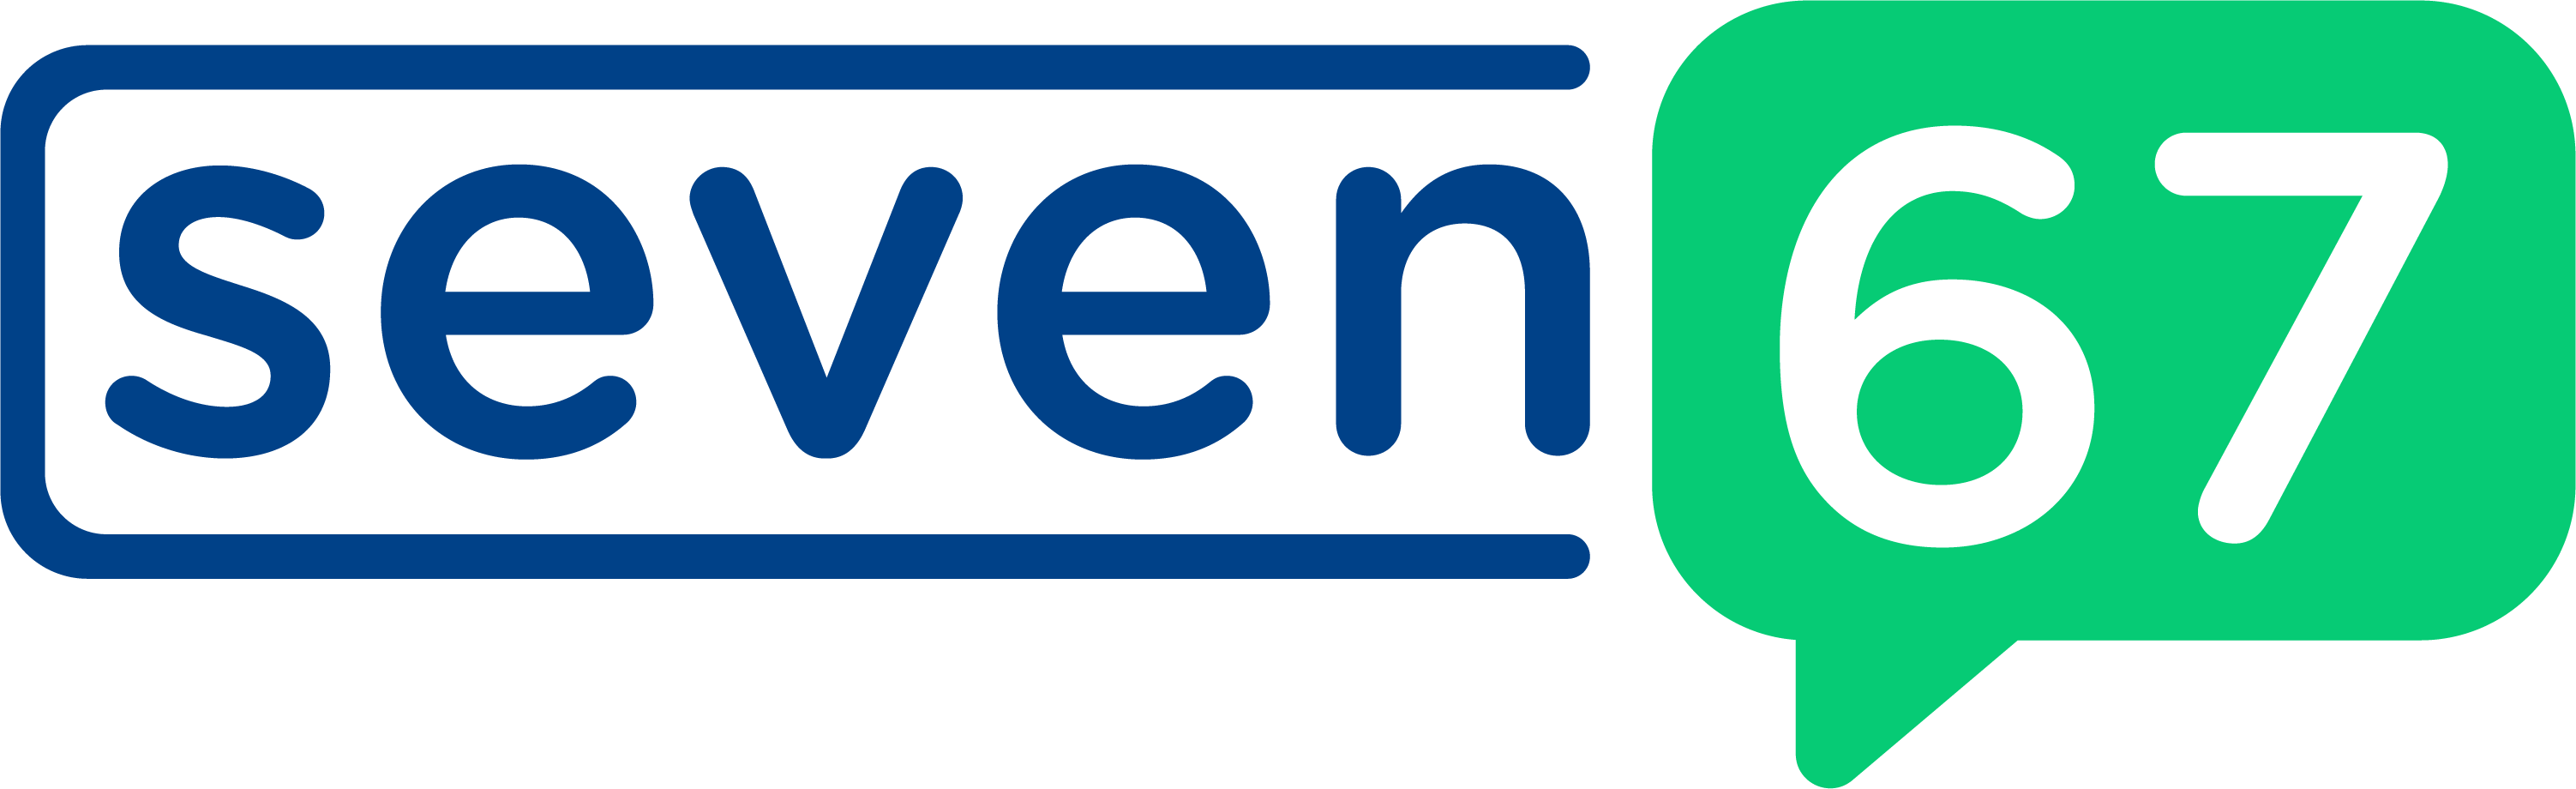 seven67 SMS Logo